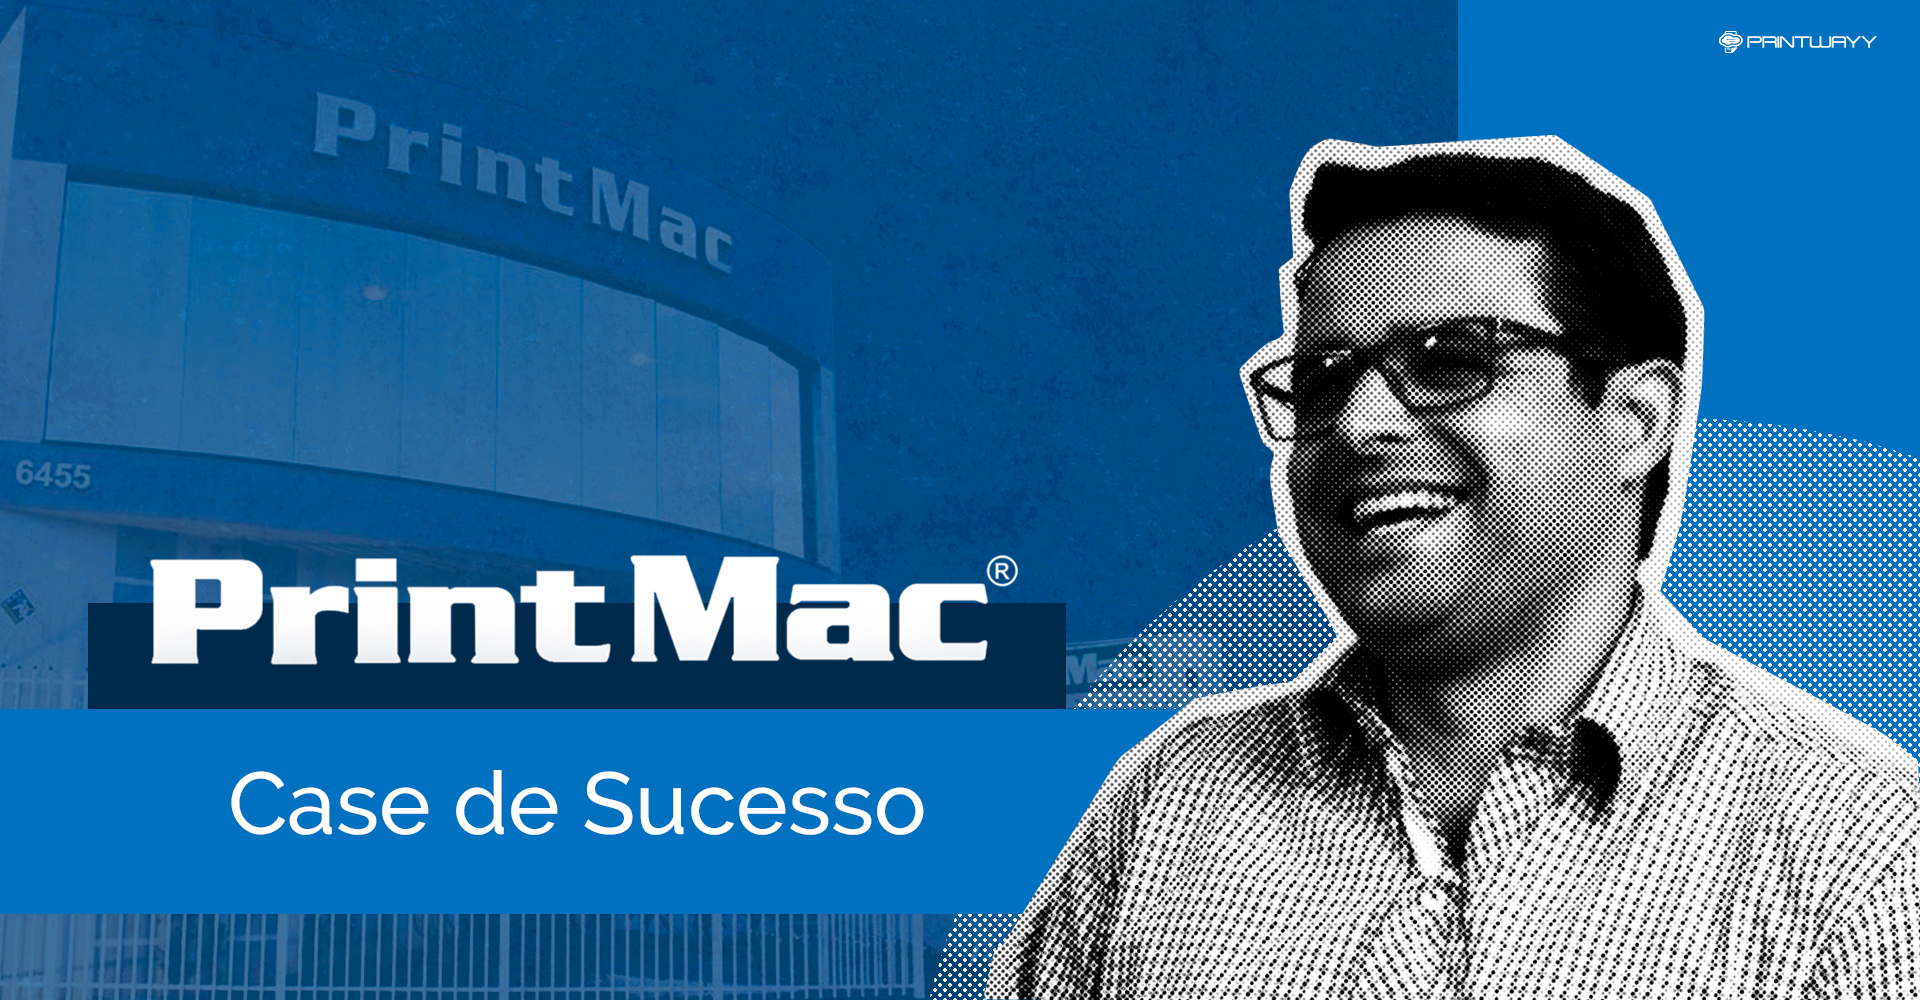 Imagem de Sergio Biassoli sorrindo, ao fundo a fachada da empresa PrintMac. A imagem representa o case de sucesso da PrintMac junto a PrintWayy.